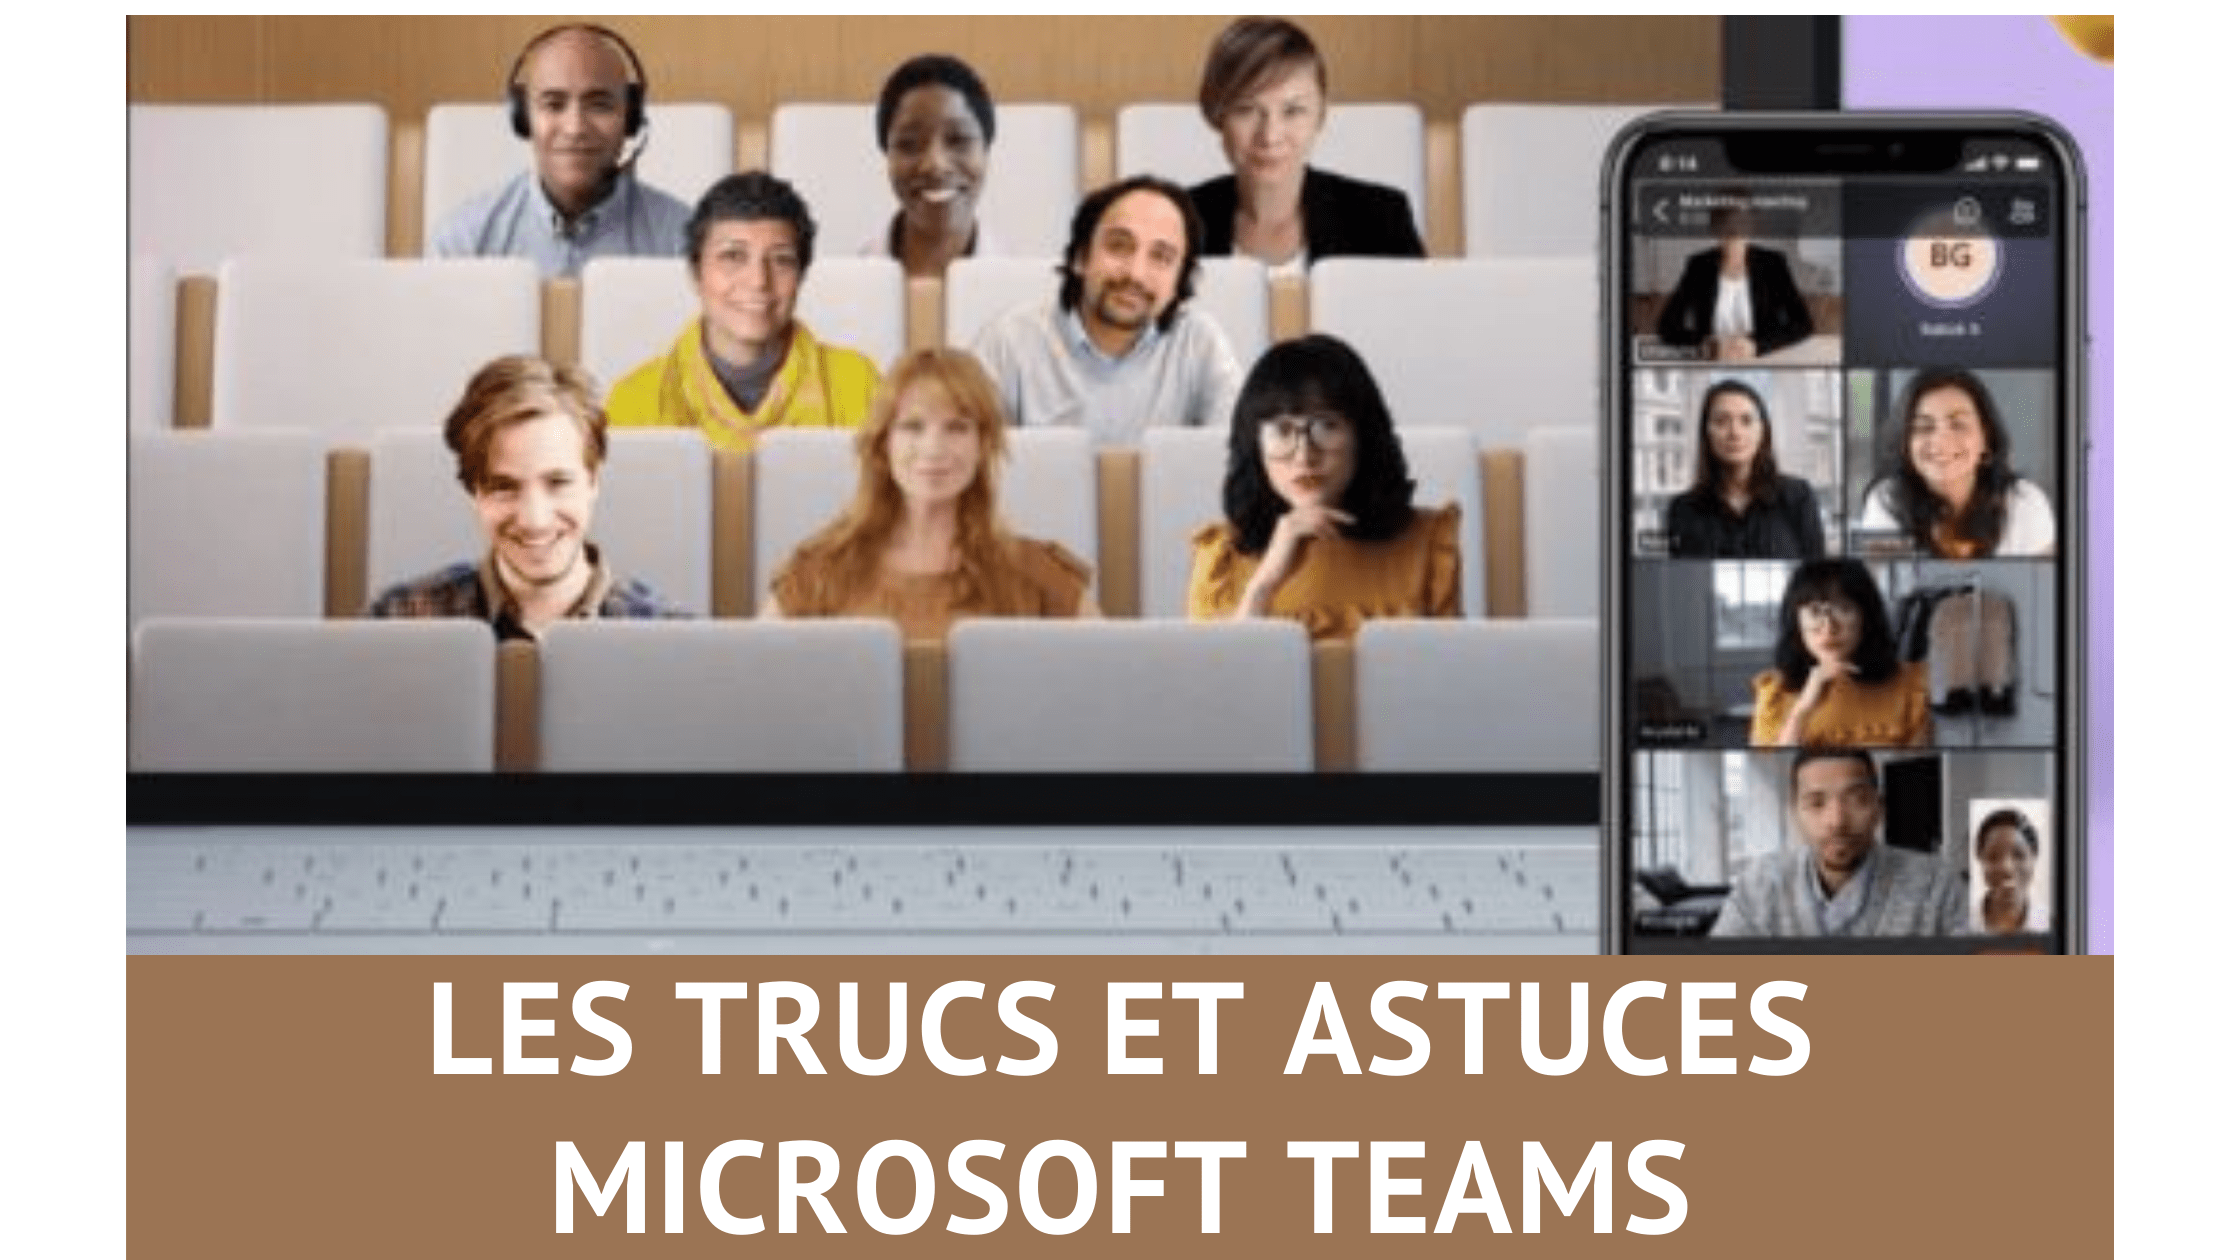 Les trucs et astuces pour Microsoft Teams, découvrez 33 fonctions méconnues de Teams ! 87